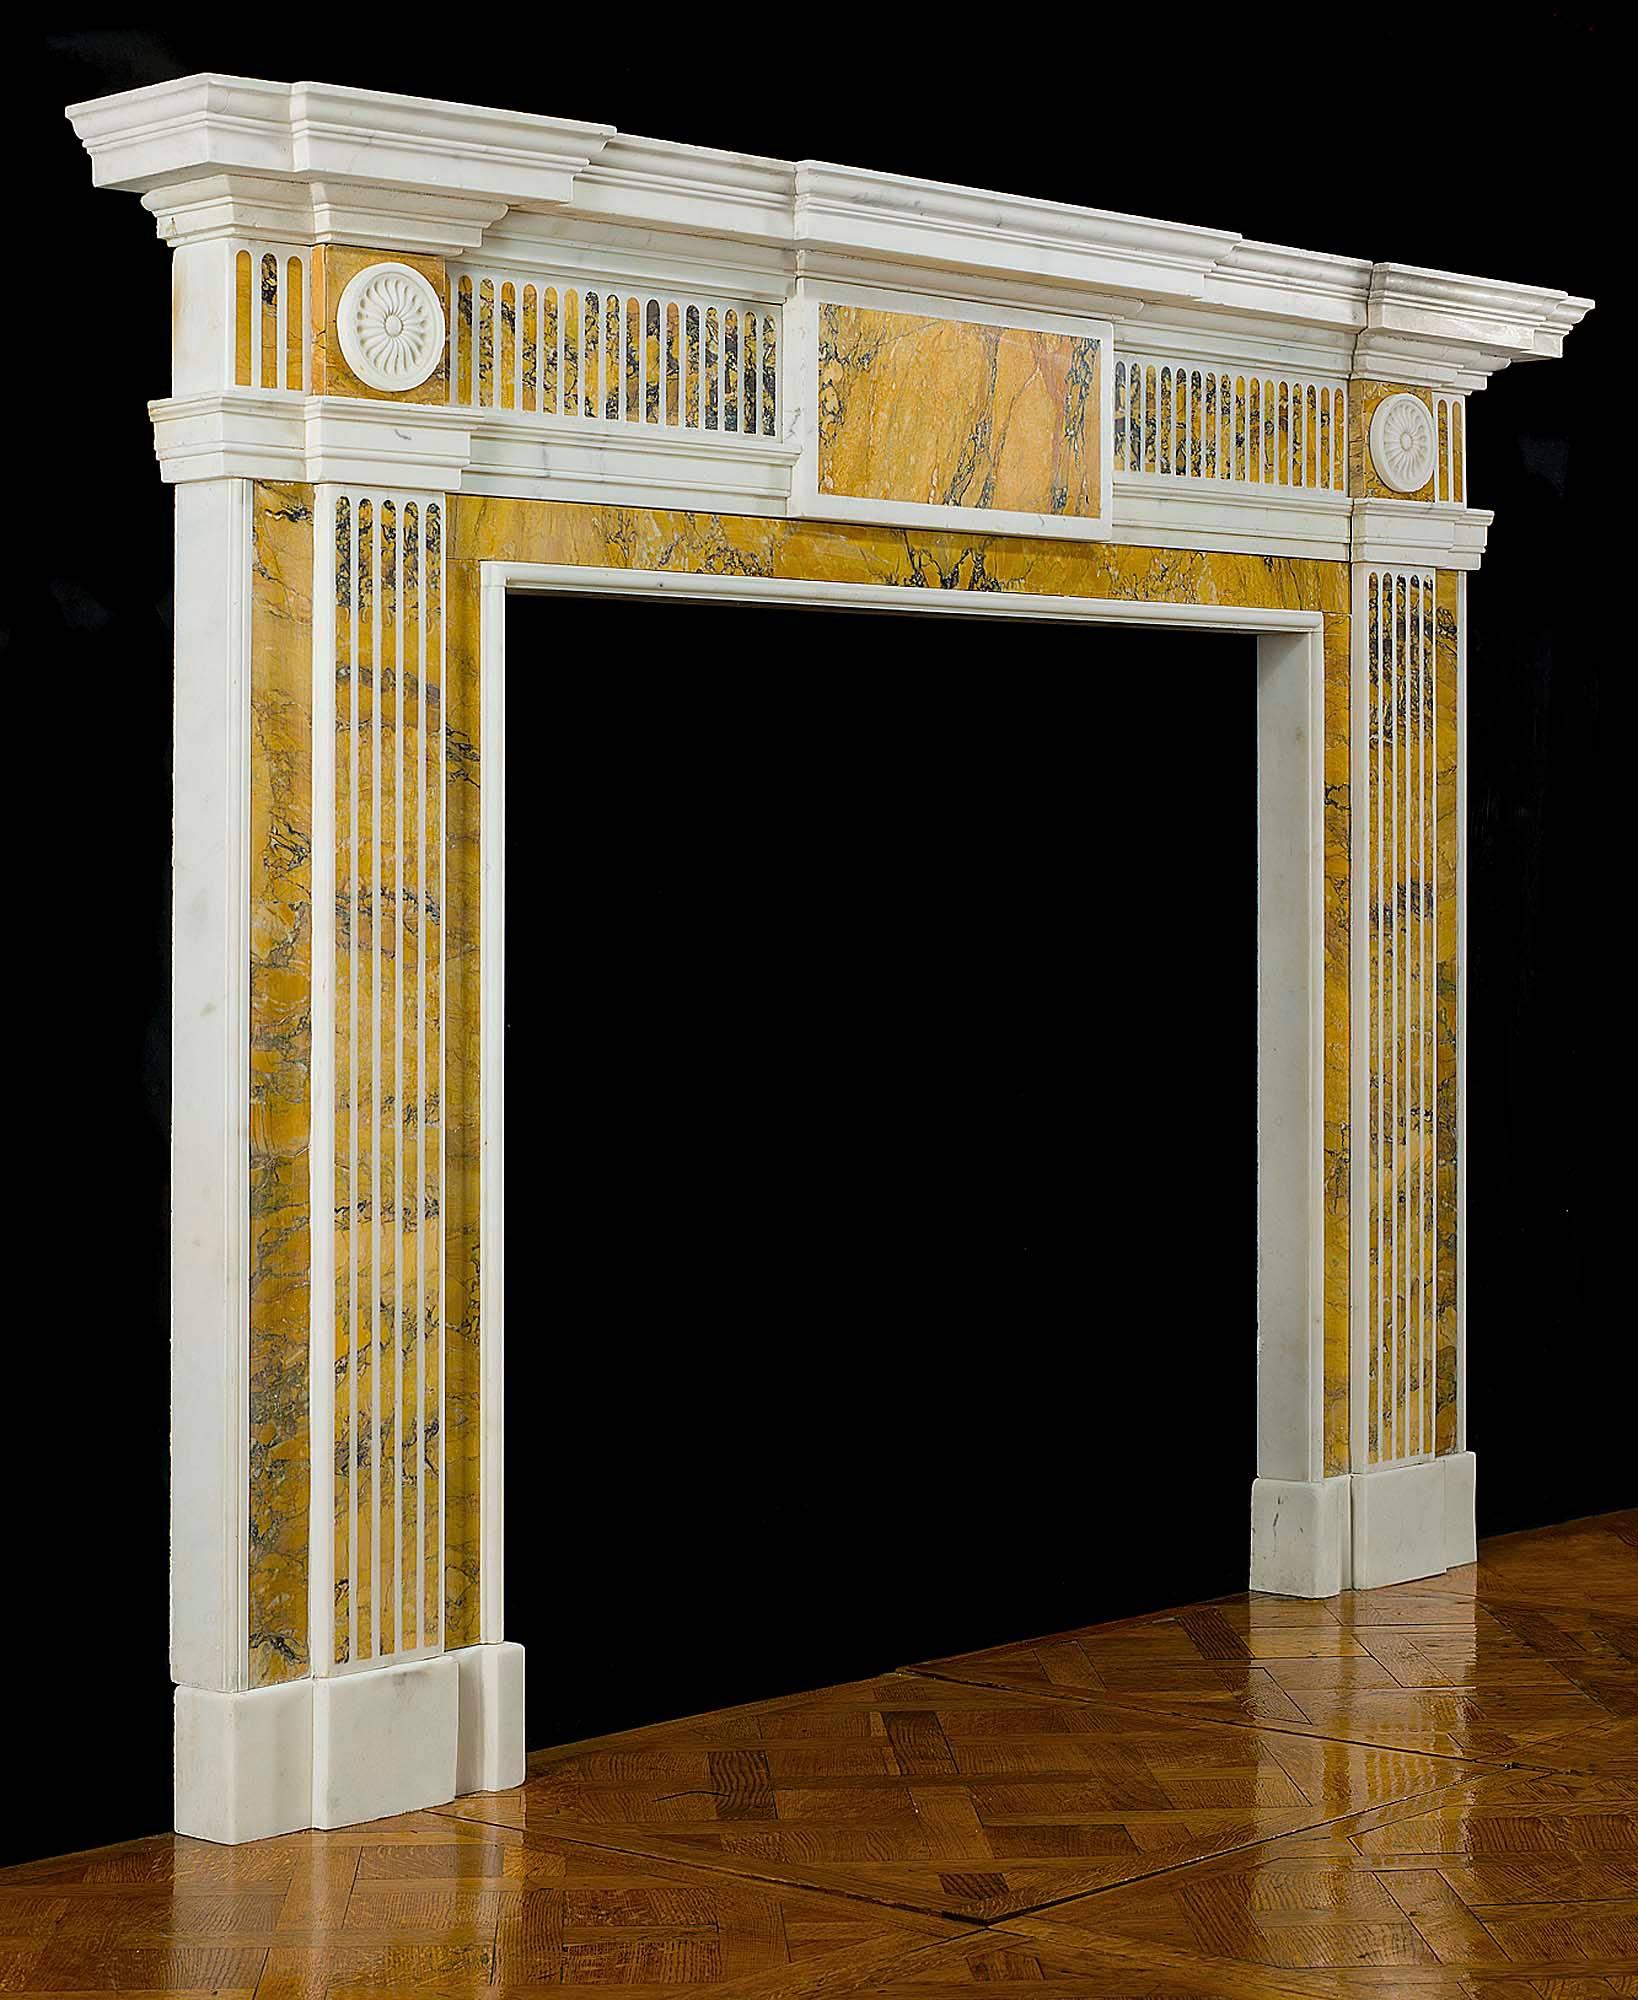 Cheminée néoclassique de la fin de l'époque géorgienne, à la manière de Robert Adams, sculptée dans du marbre statuaire blanc avec des incrustations de marbre jaune de Sienne. La large étagère de la façade, placée au-dessus de la frise cannelée, est